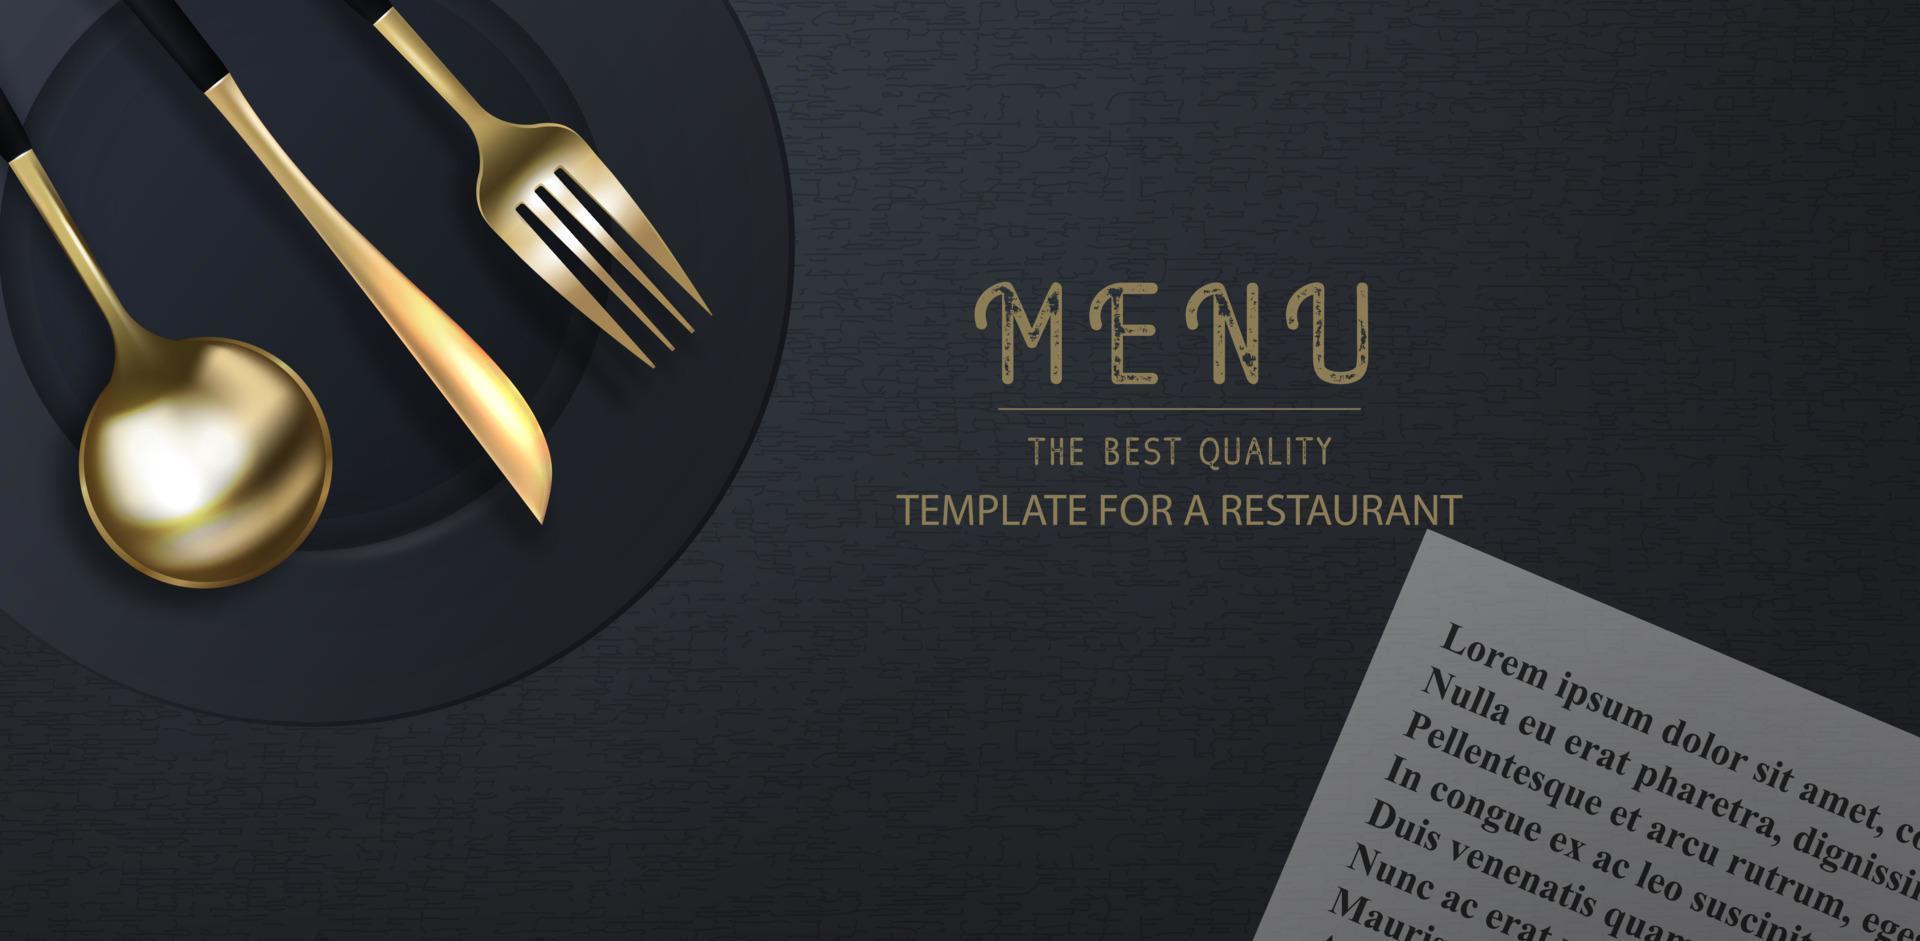 tenedor, cuchillo y cuchara dorados 3d realistas sobre un fondo de grunge negro. cartel moderno de moda para un restaurante. ilustración de vector de vista superior.